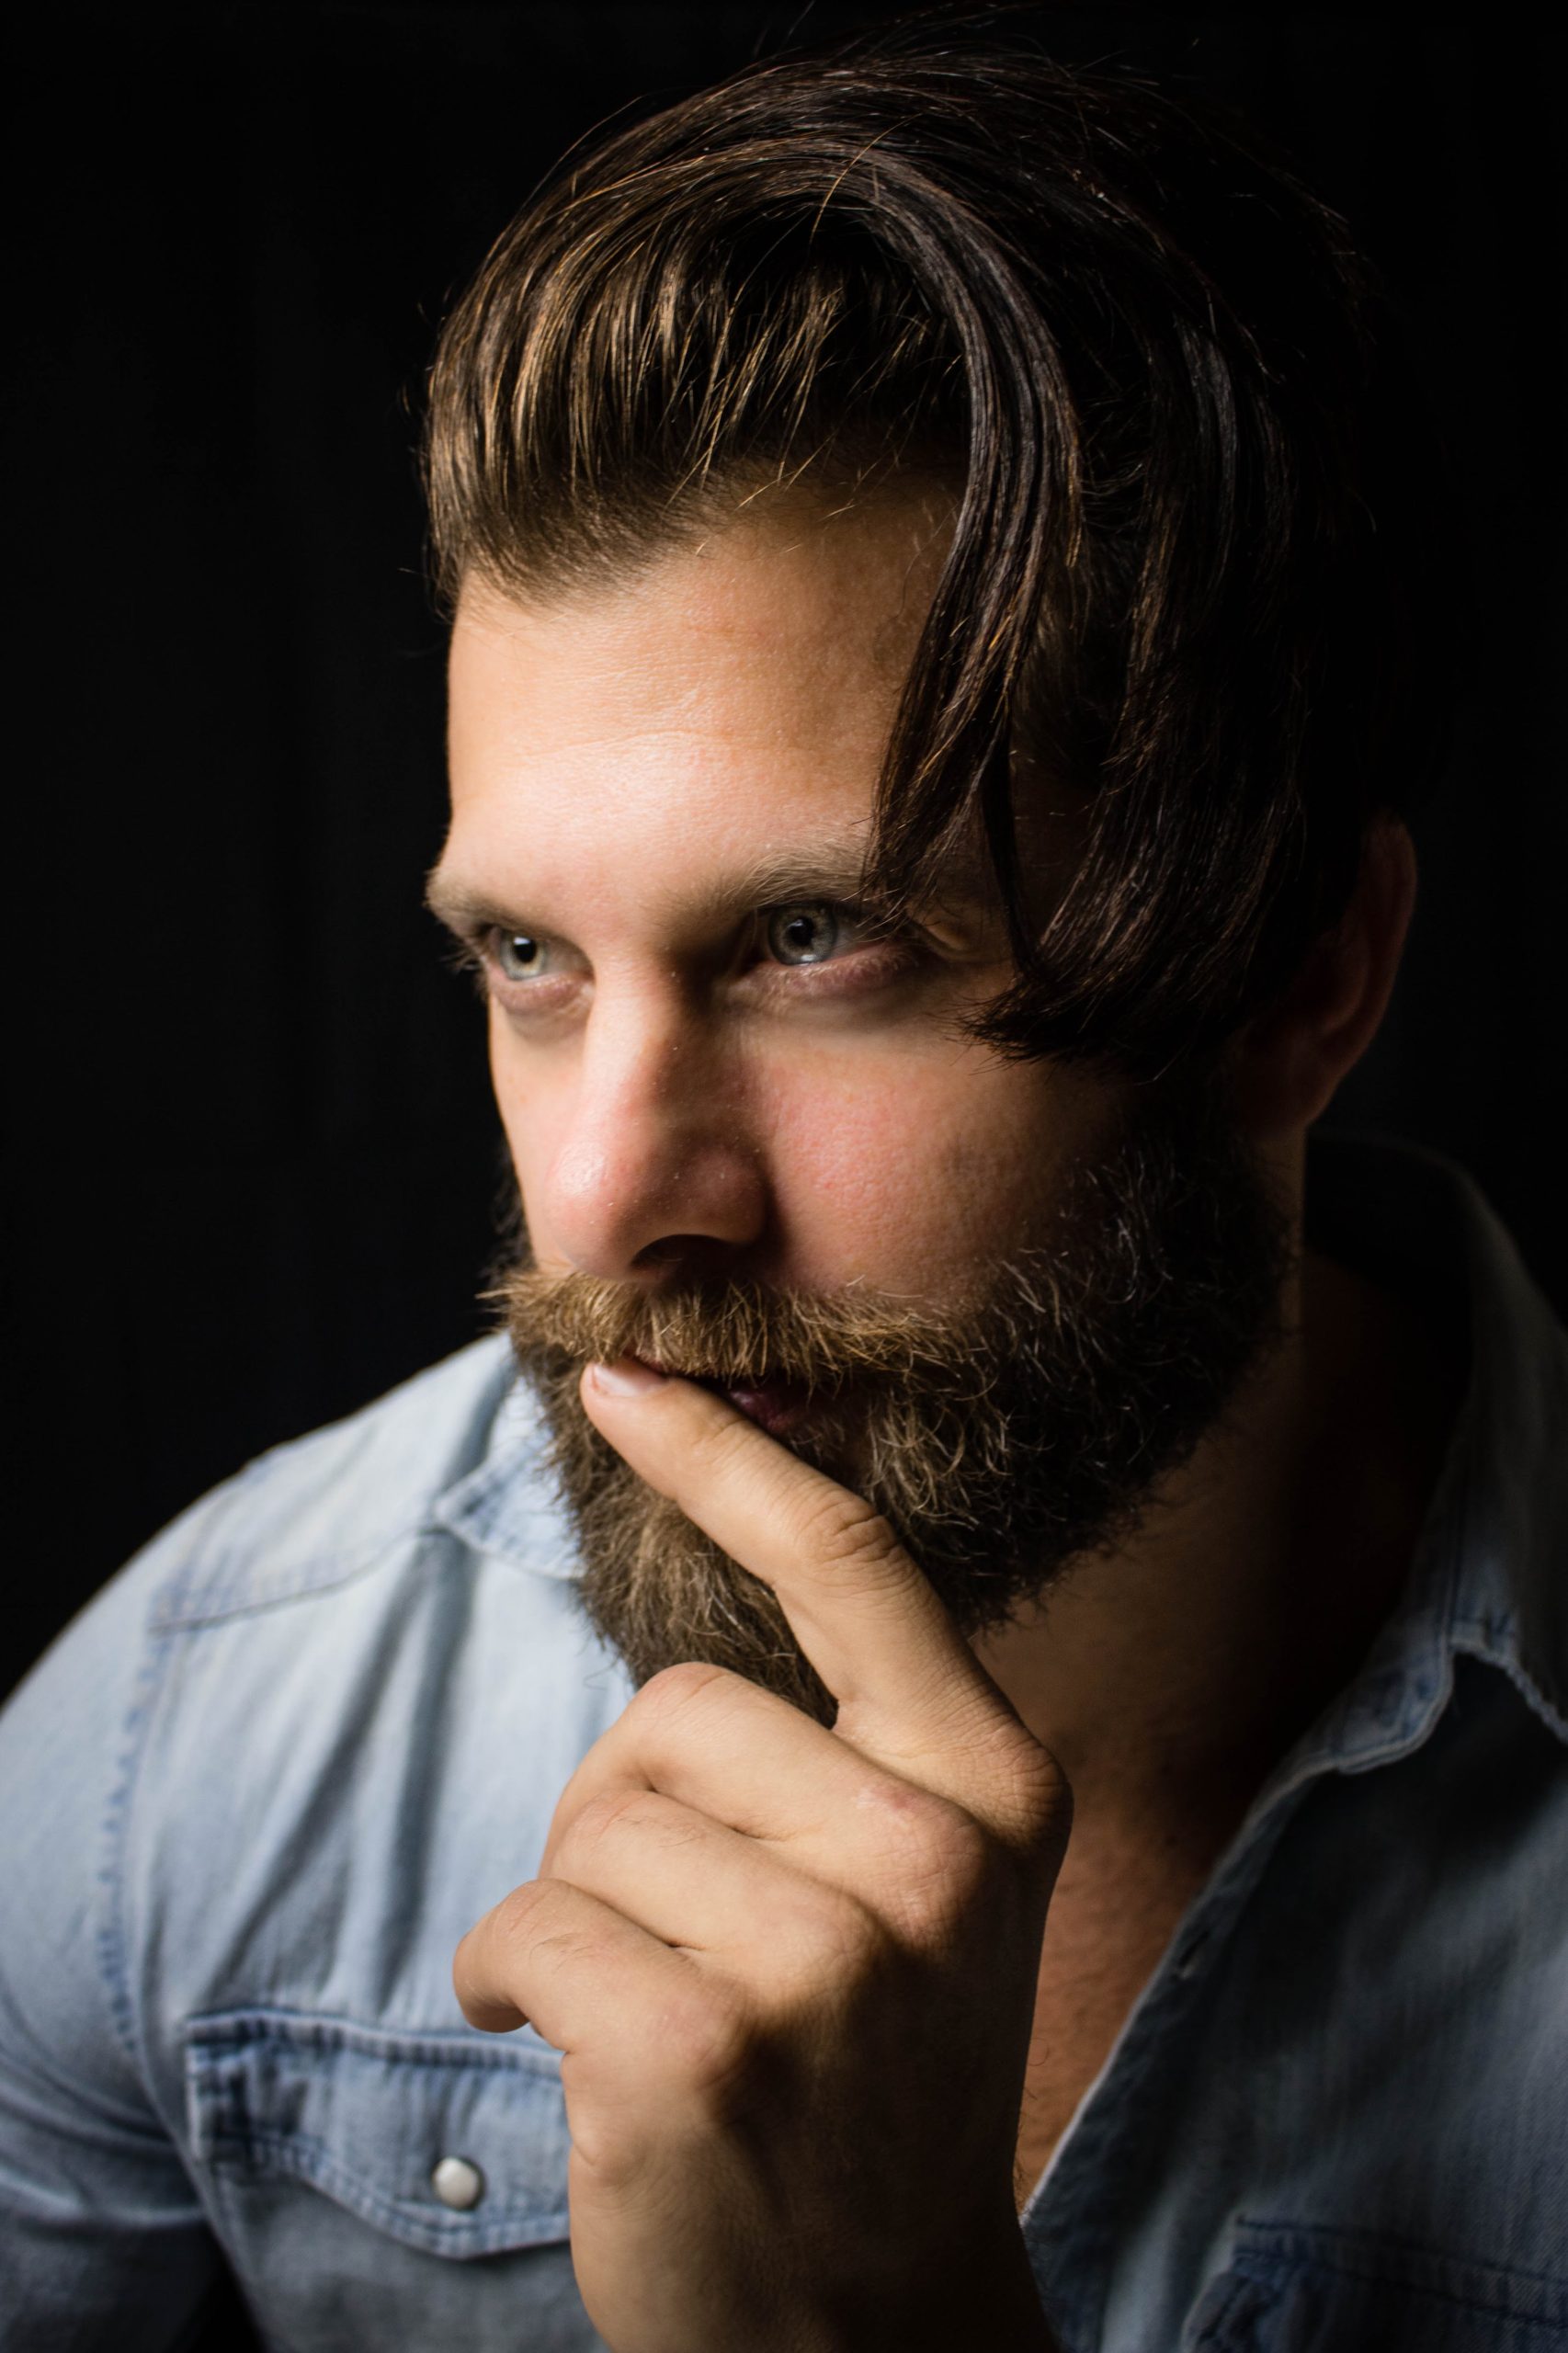 Beard Hair Growth Tips